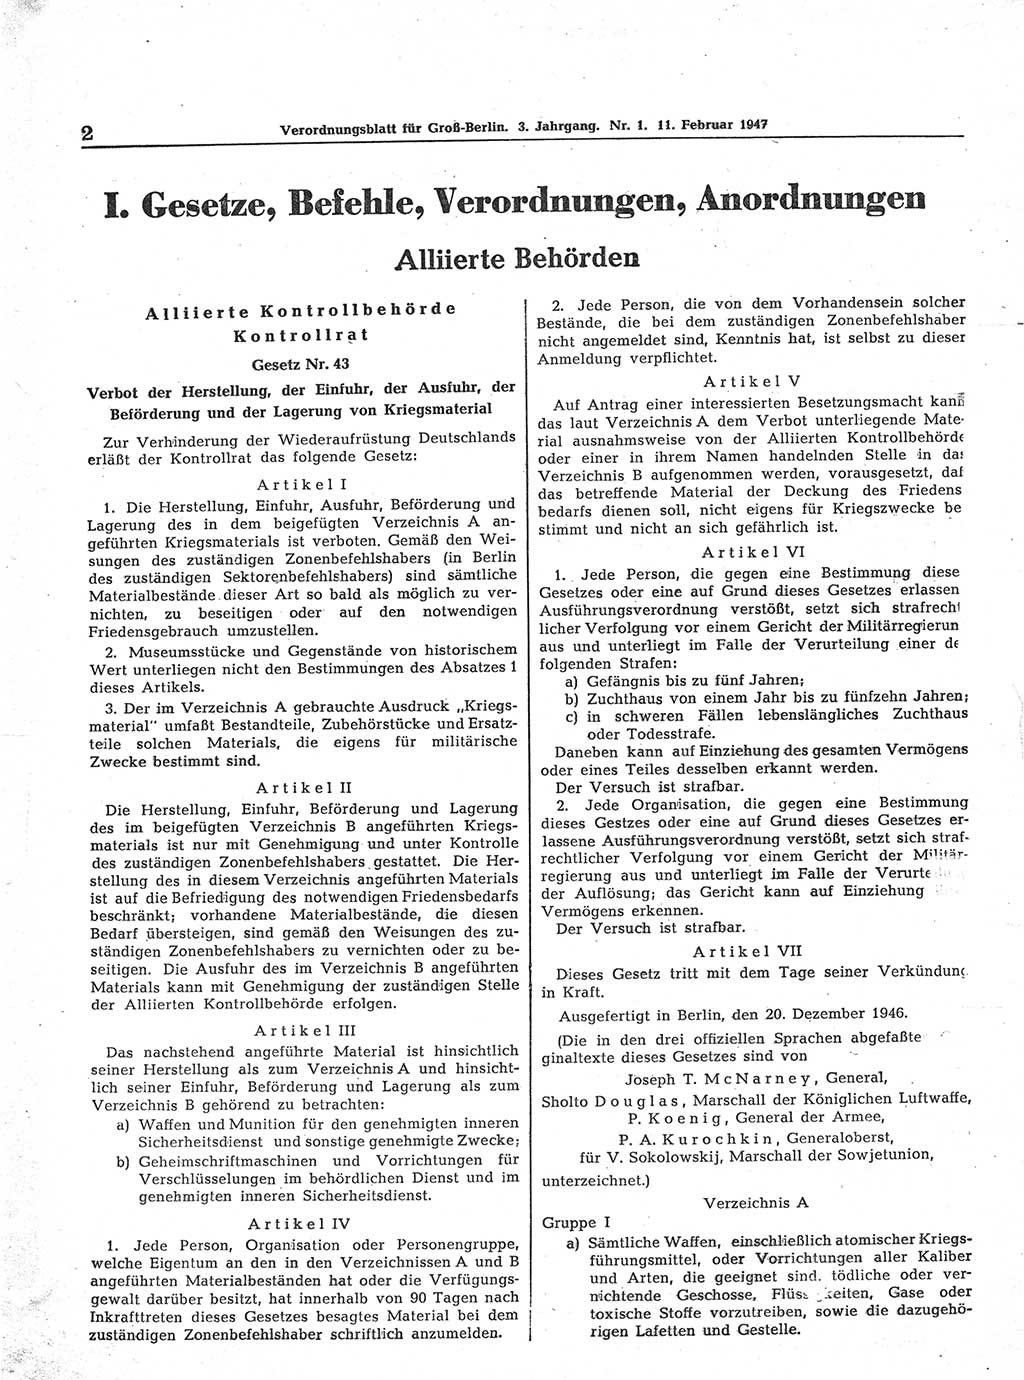 Verordnungsblatt (VOBl.) für Groß-Berlin 1947, Seite 2 (VOBl. Bln. 1947, S. 2)